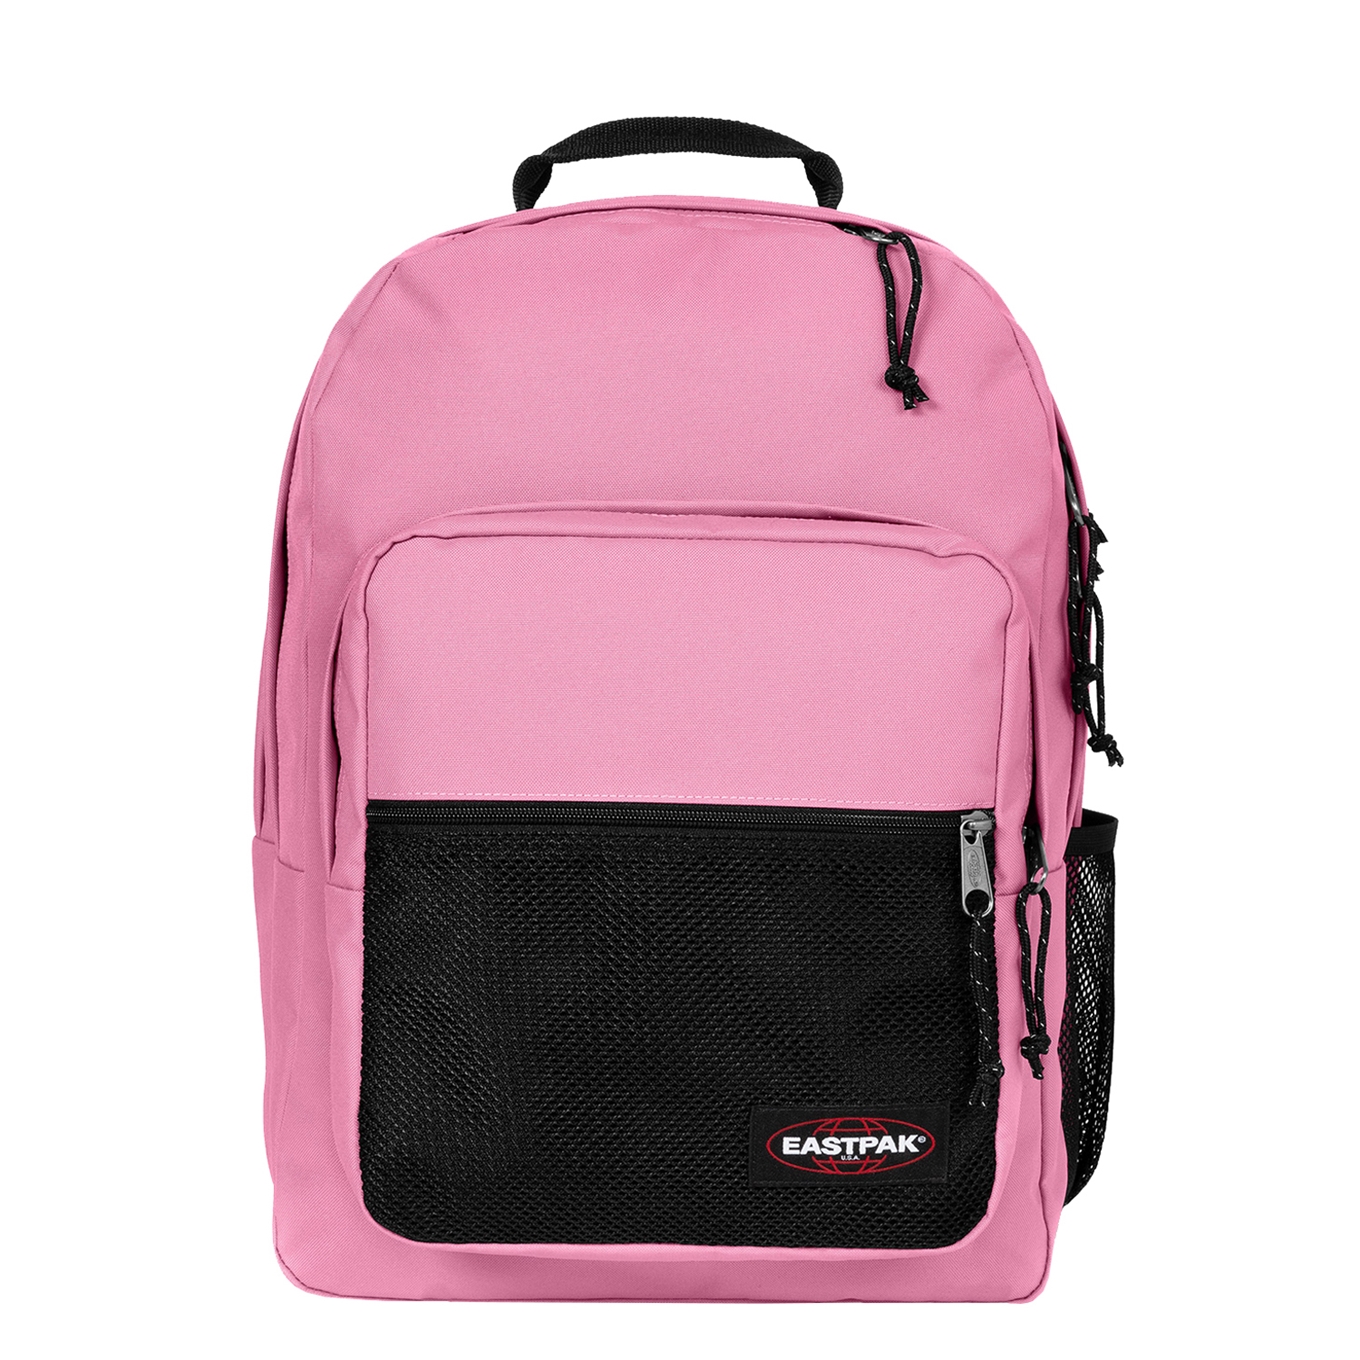 Eastpak Pinzip cloud pink backpack